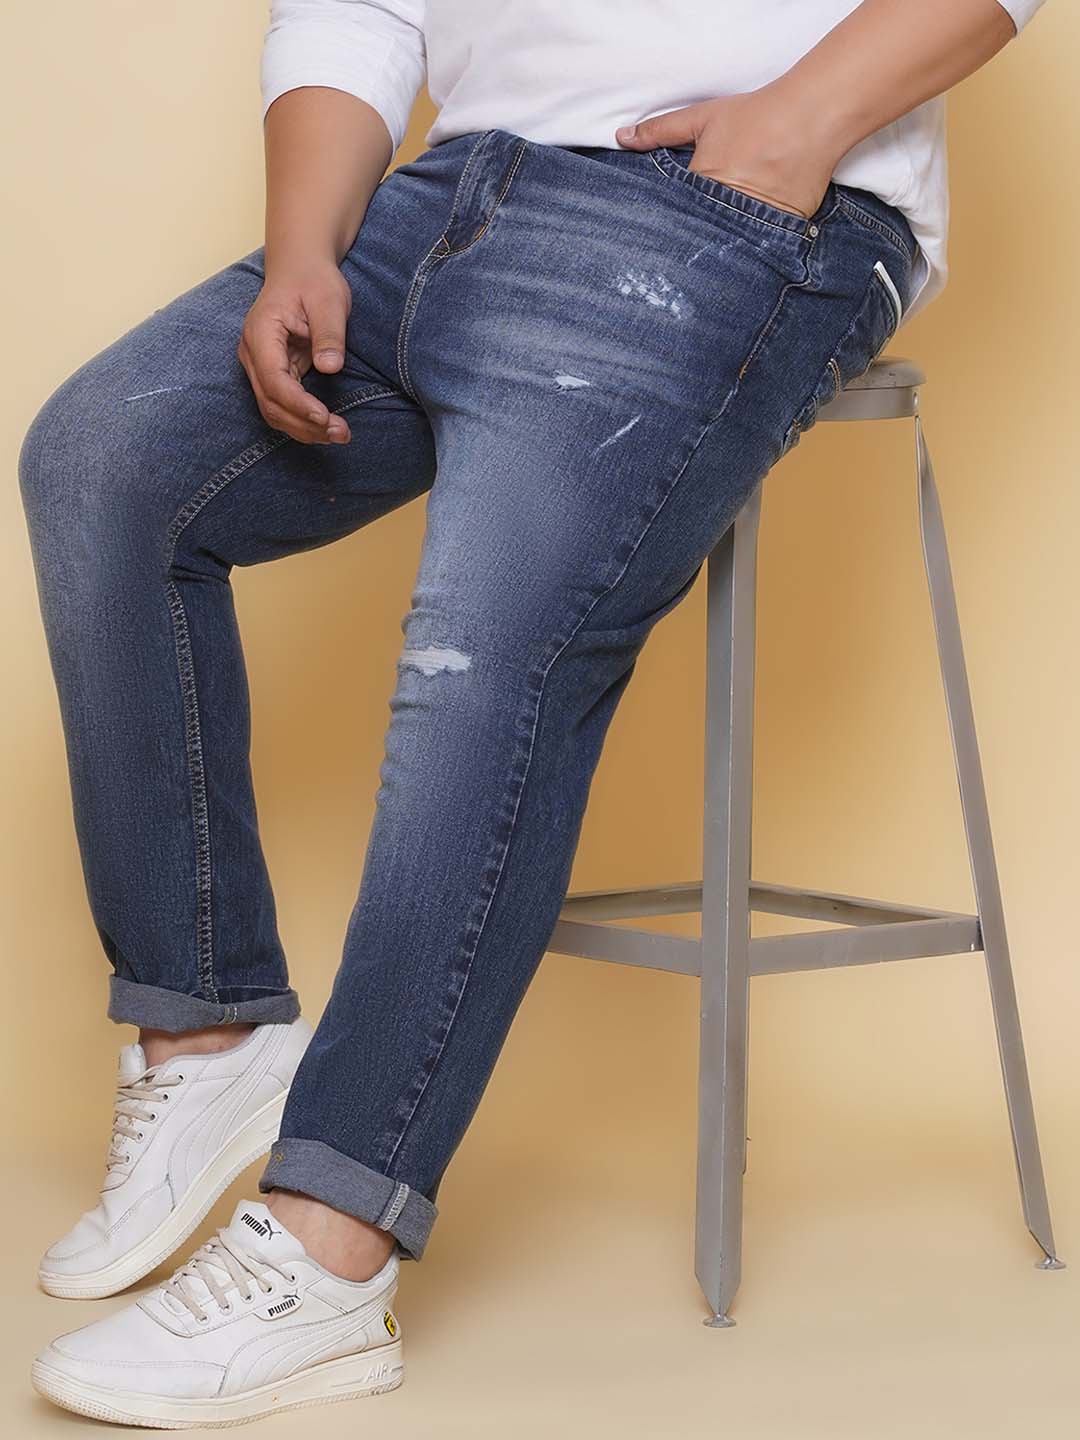 bottomwear/jeans/EJPJ25133/ejpj25133-1.jpg